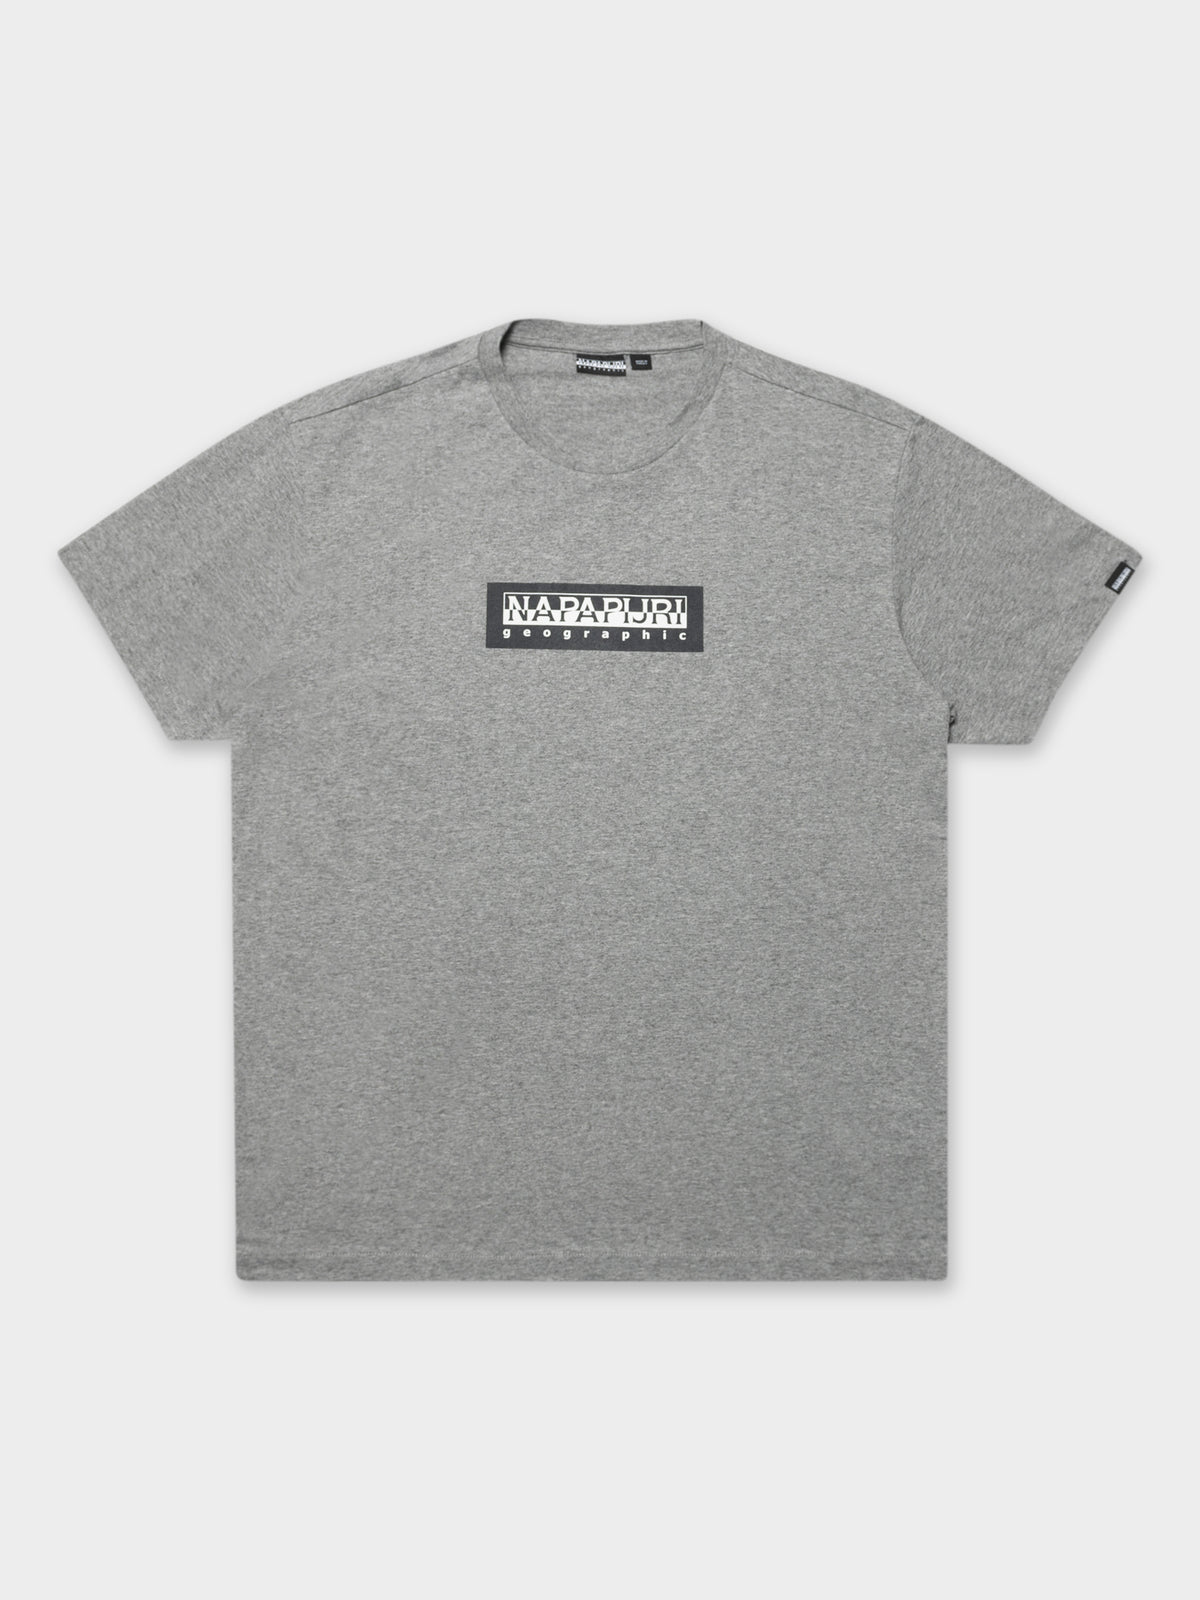 Sox T-Shirt in Grey Marle